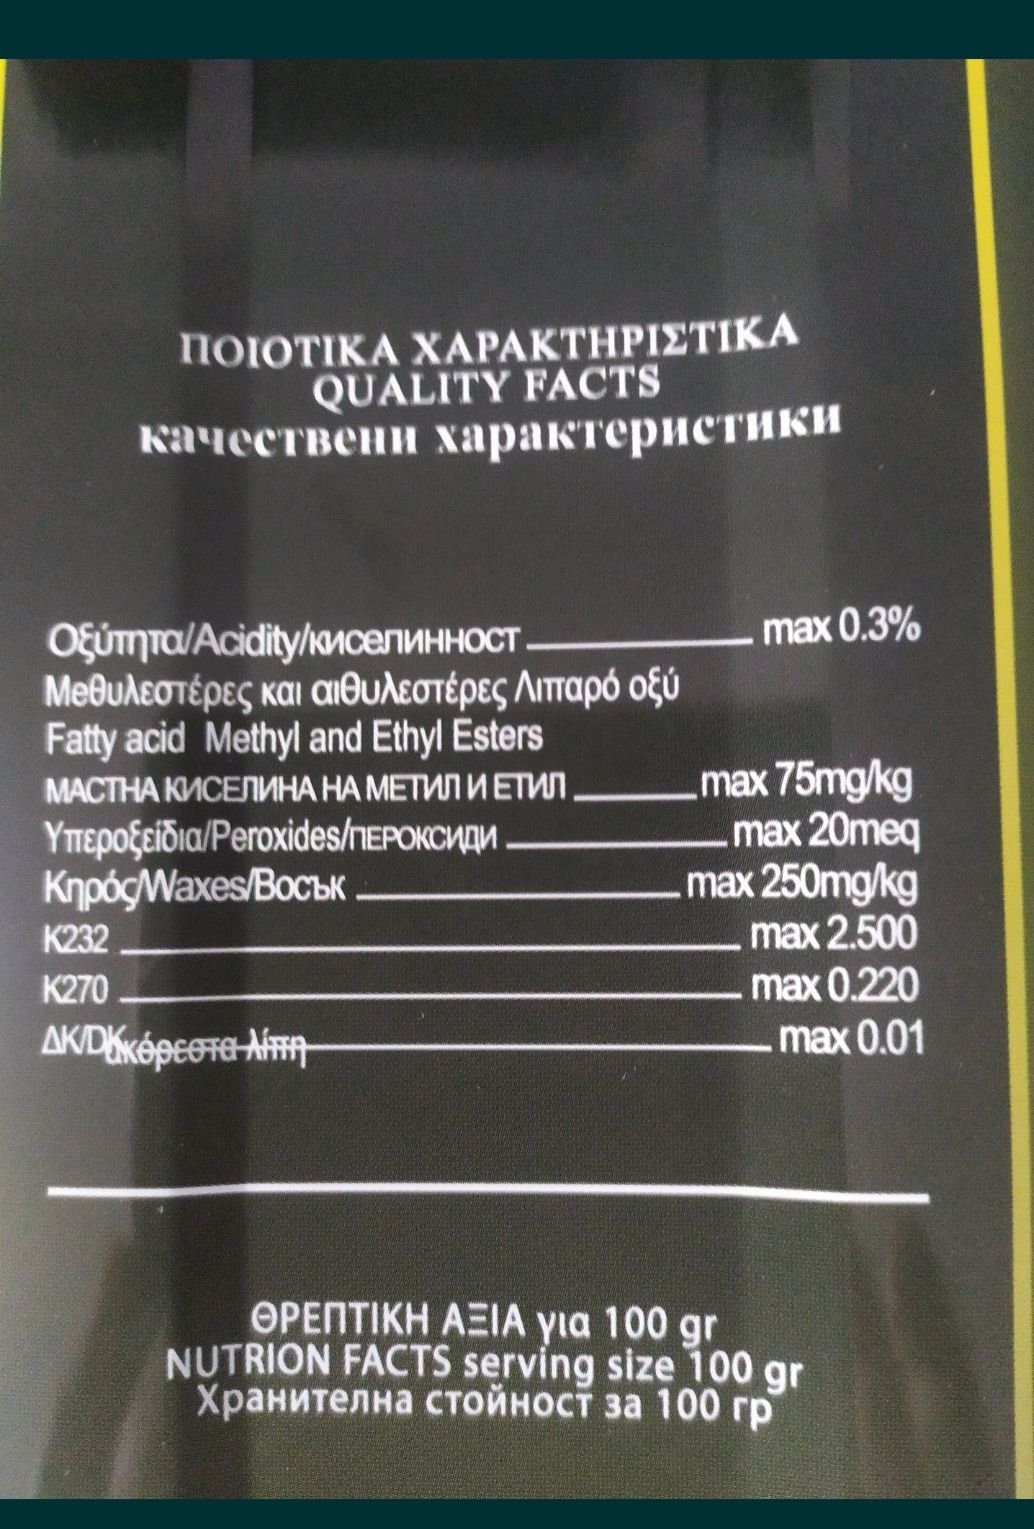 Oryginalna grecka oliwa z oliwek extra virgin 5 litrów .